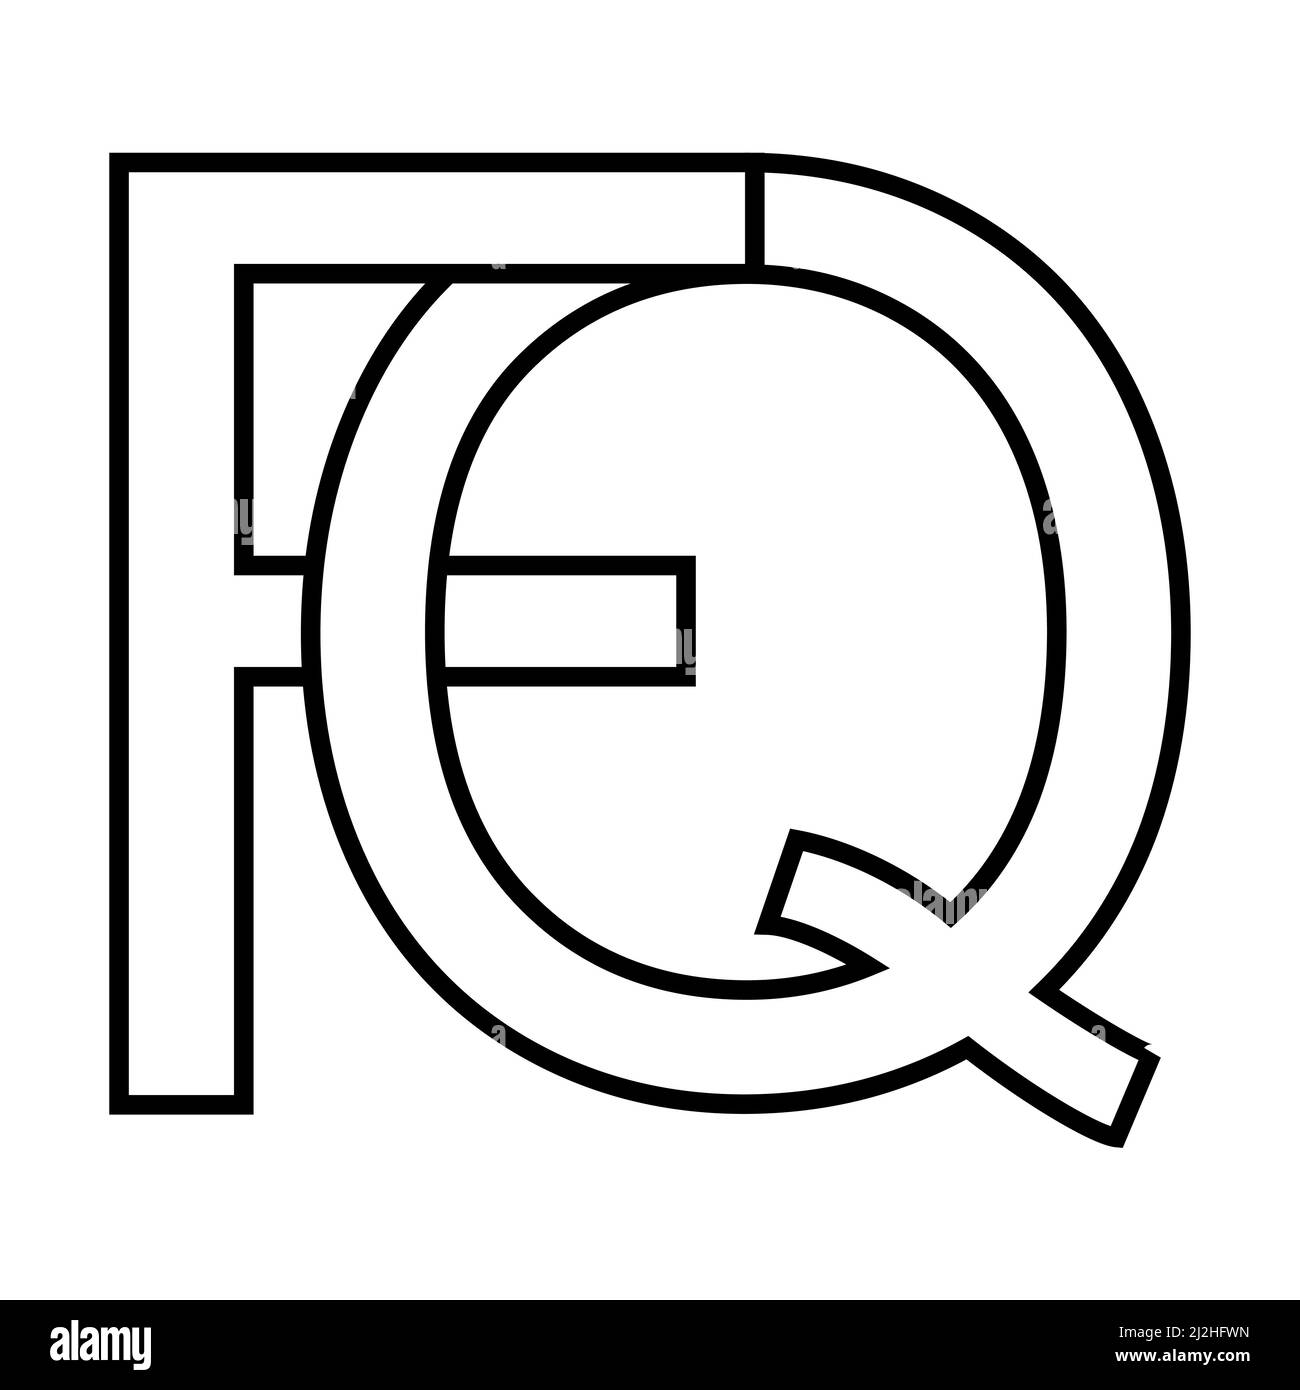 Logo, fq qf icona nft fq lettere interlacciate f q Illustrazione Vettoriale